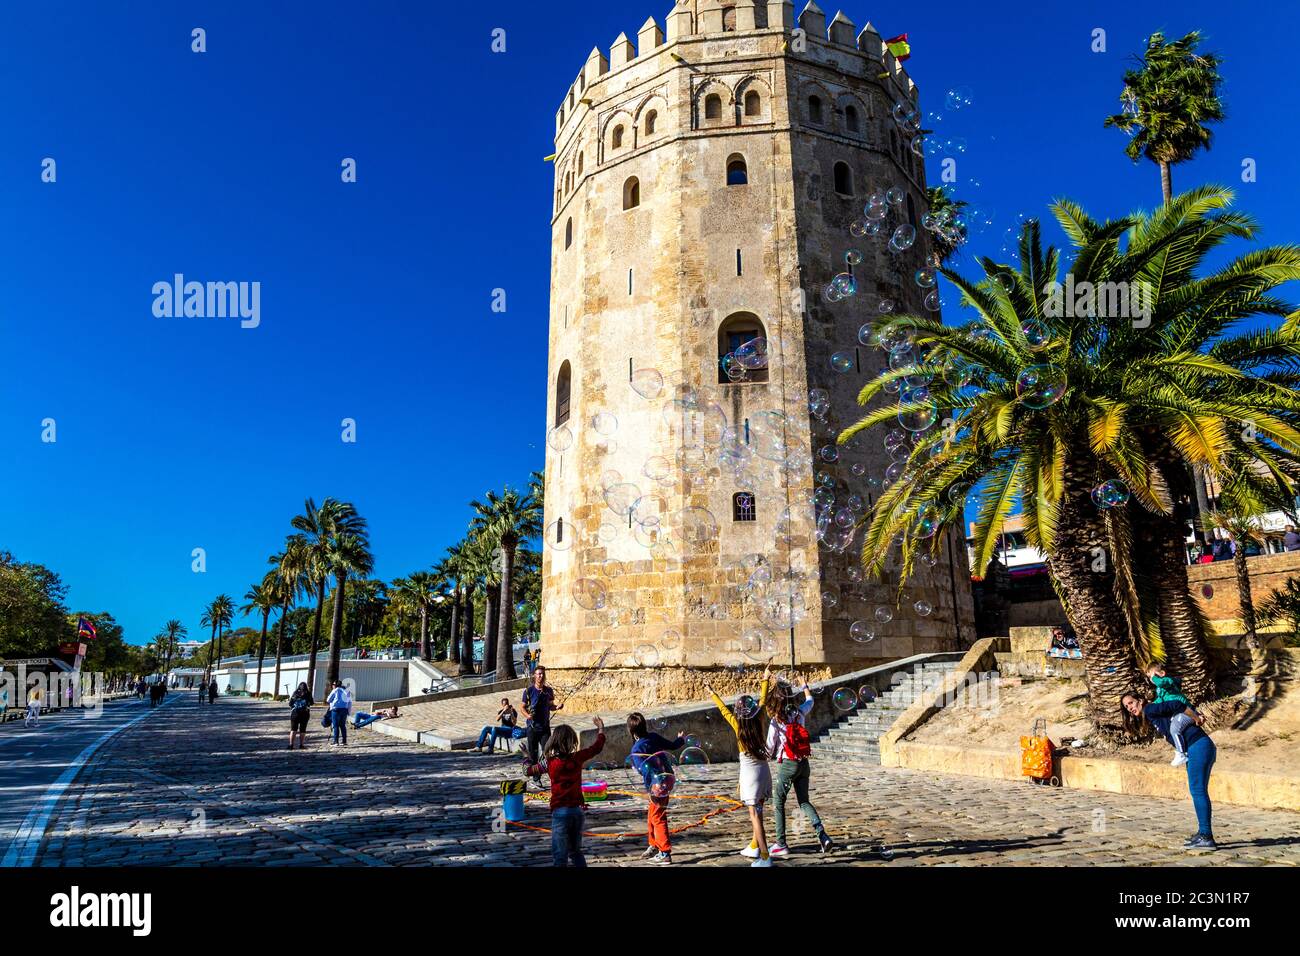 Torre del Oro - relojería medieval del siglo XIII y ahora una terraza mirador y museo naval, Sevilla, Andalucía, España Foto de stock